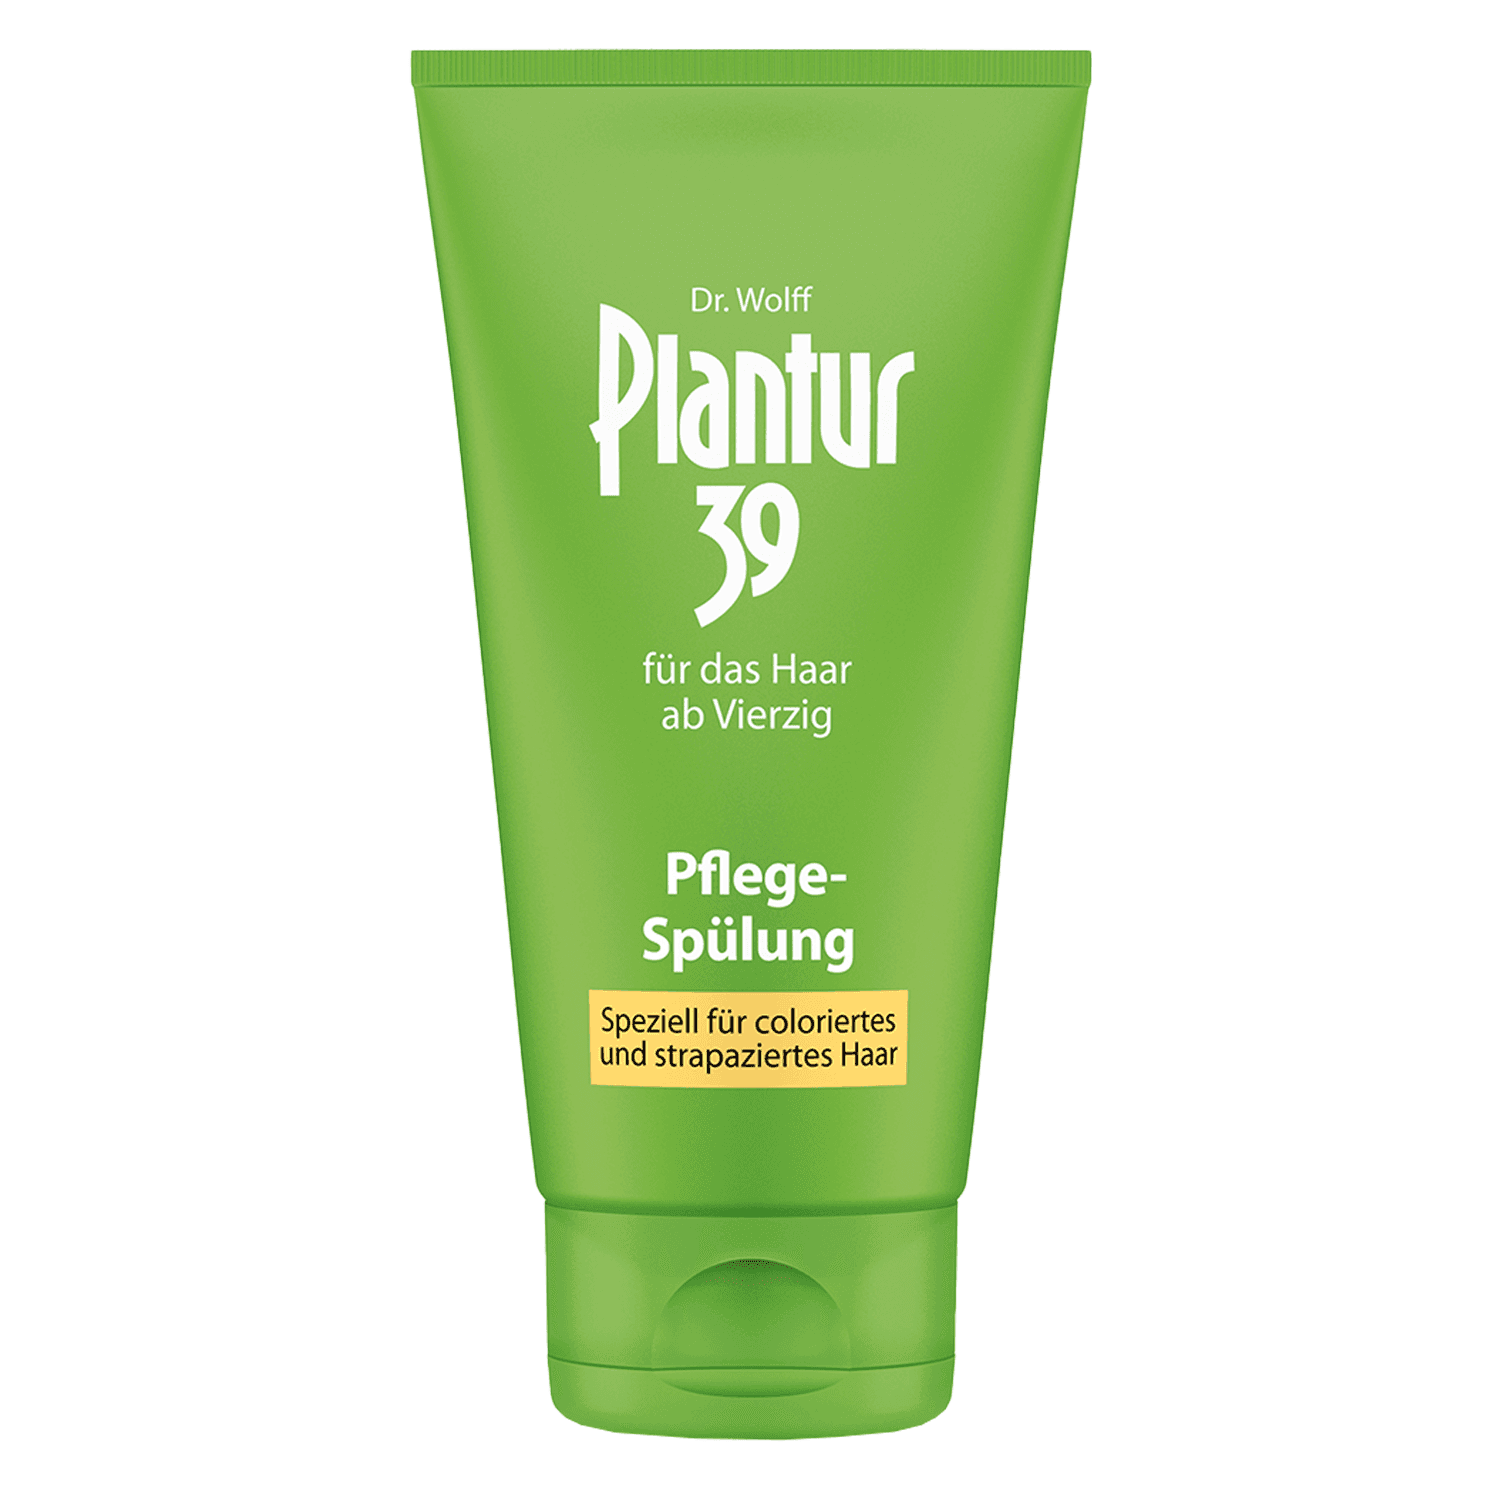 Plantur 39 - Plantur 39 Pflege-Spülung speziell für coloriertes und strapaziertes Haar